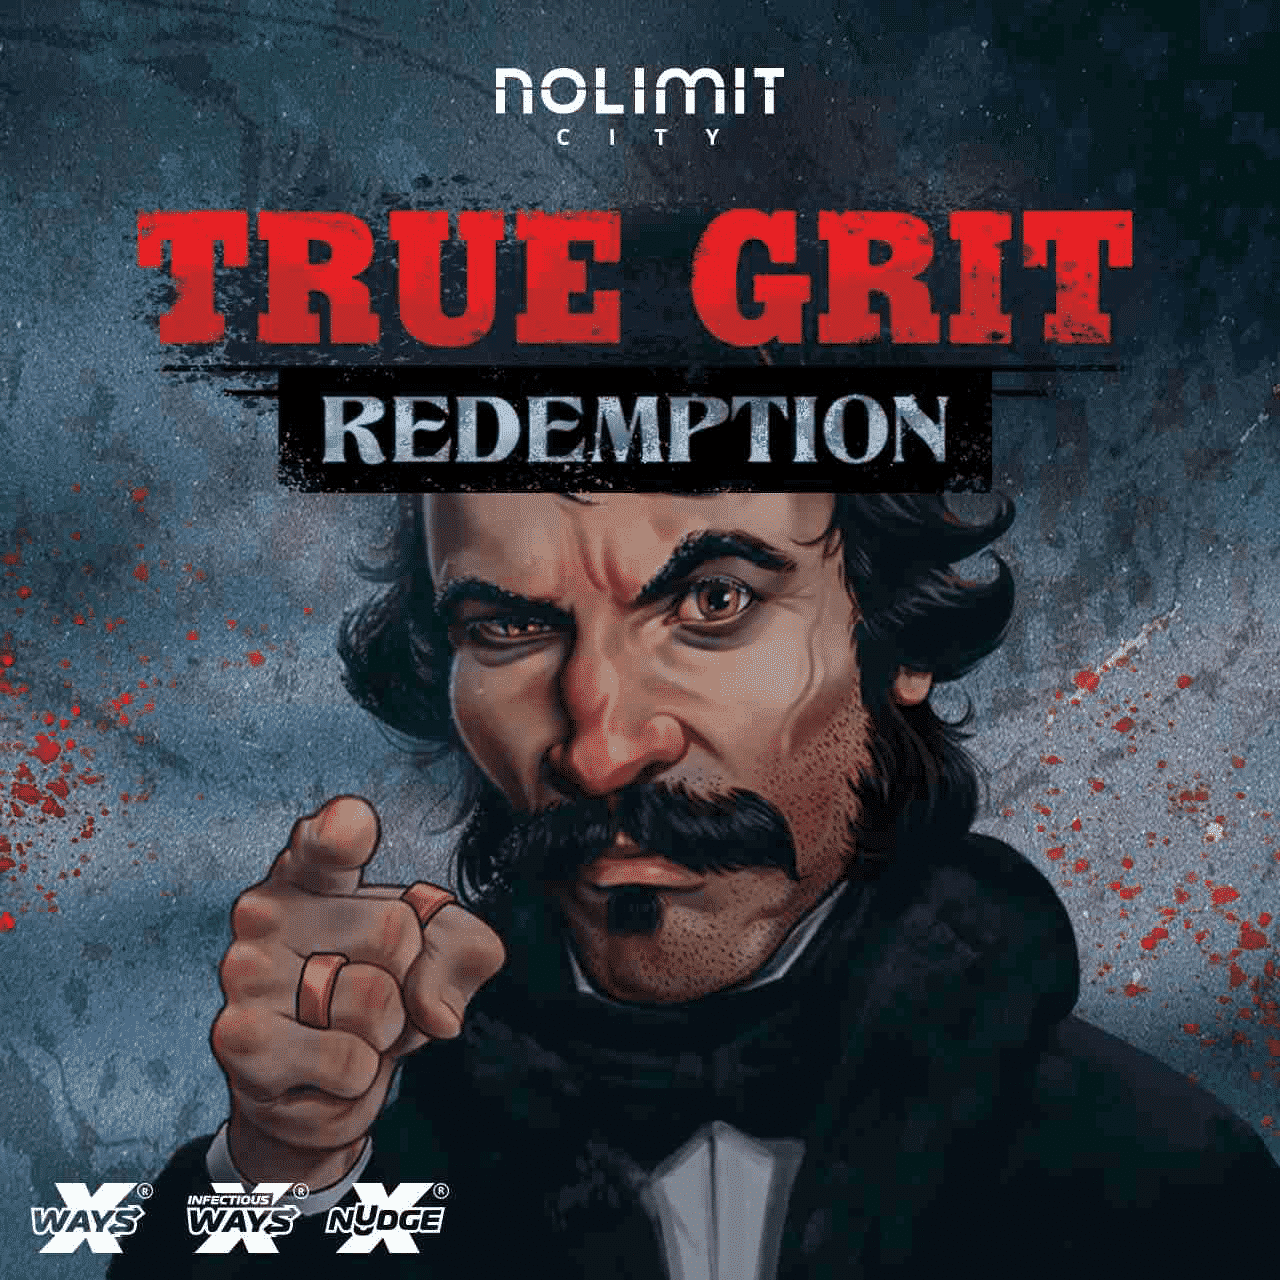 True Grit Redemption Logo